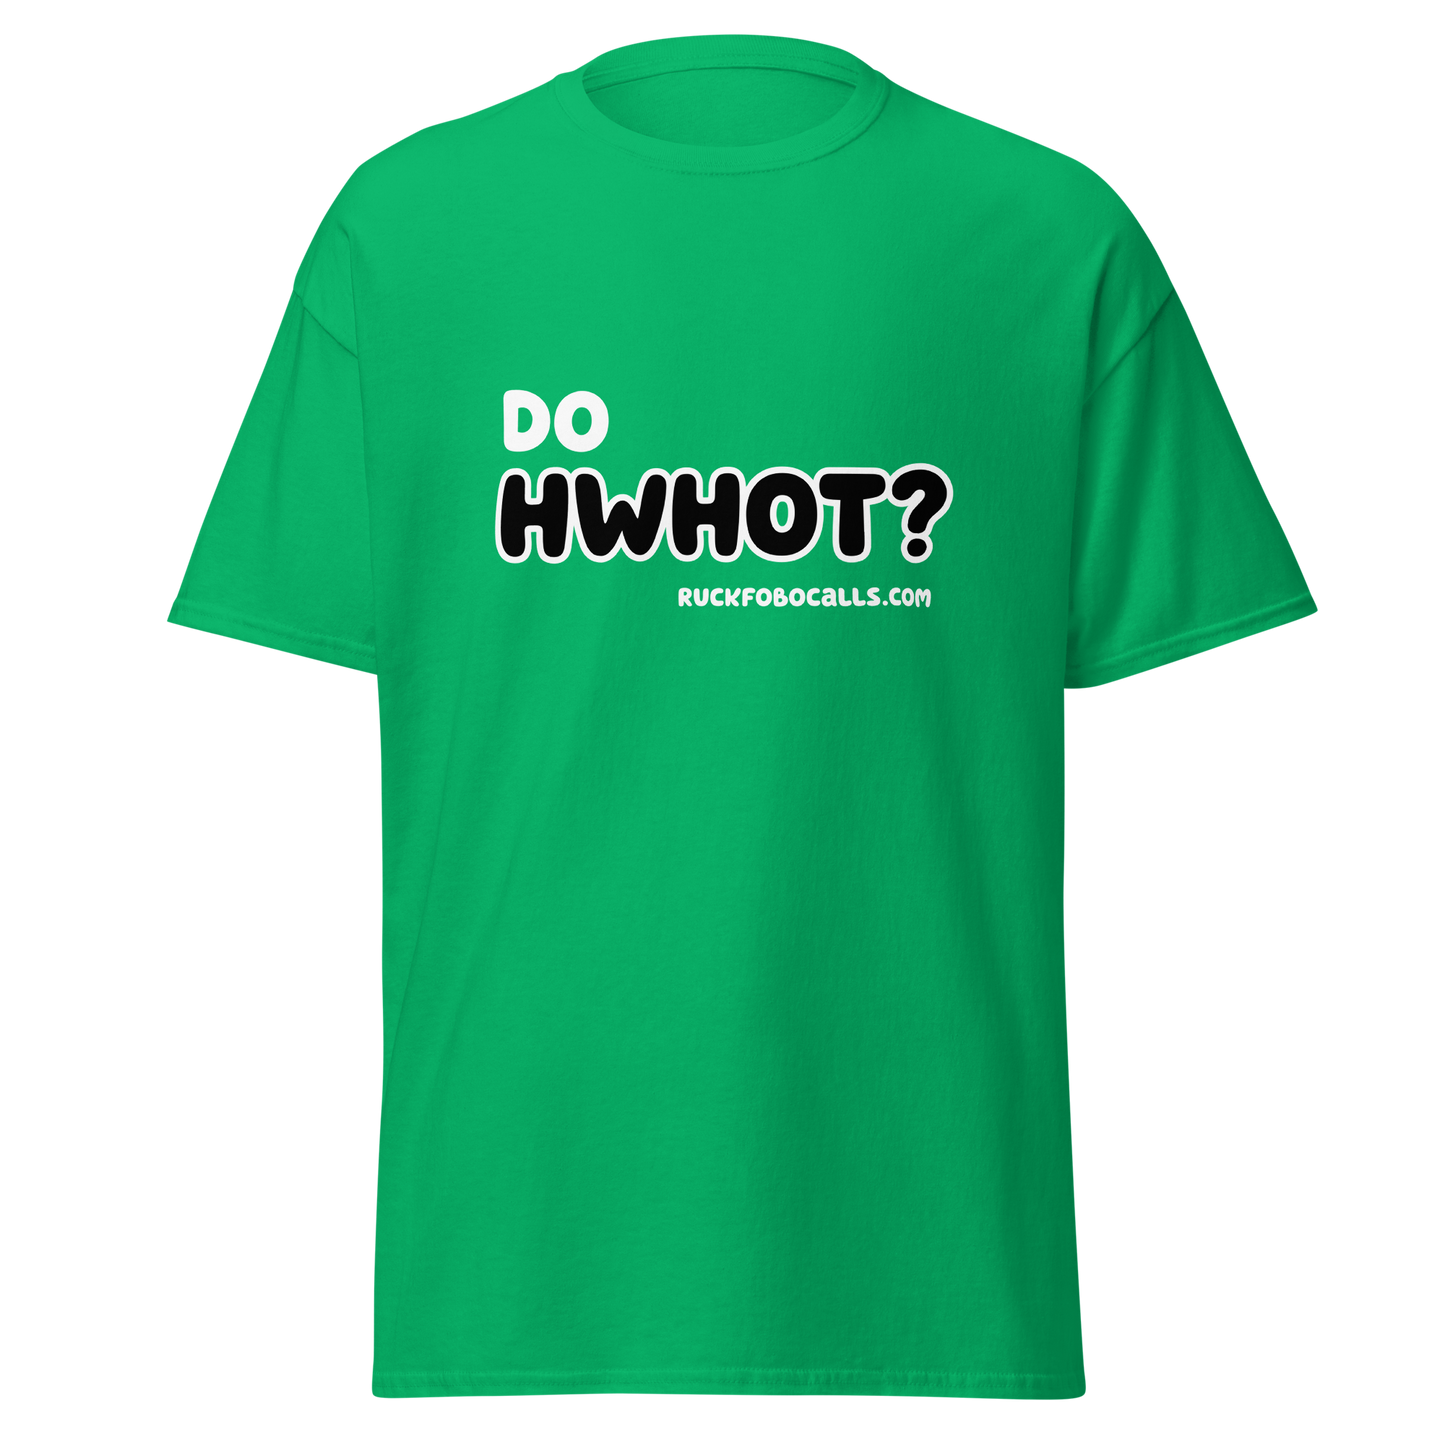 Do HWHOT? T-Shirt